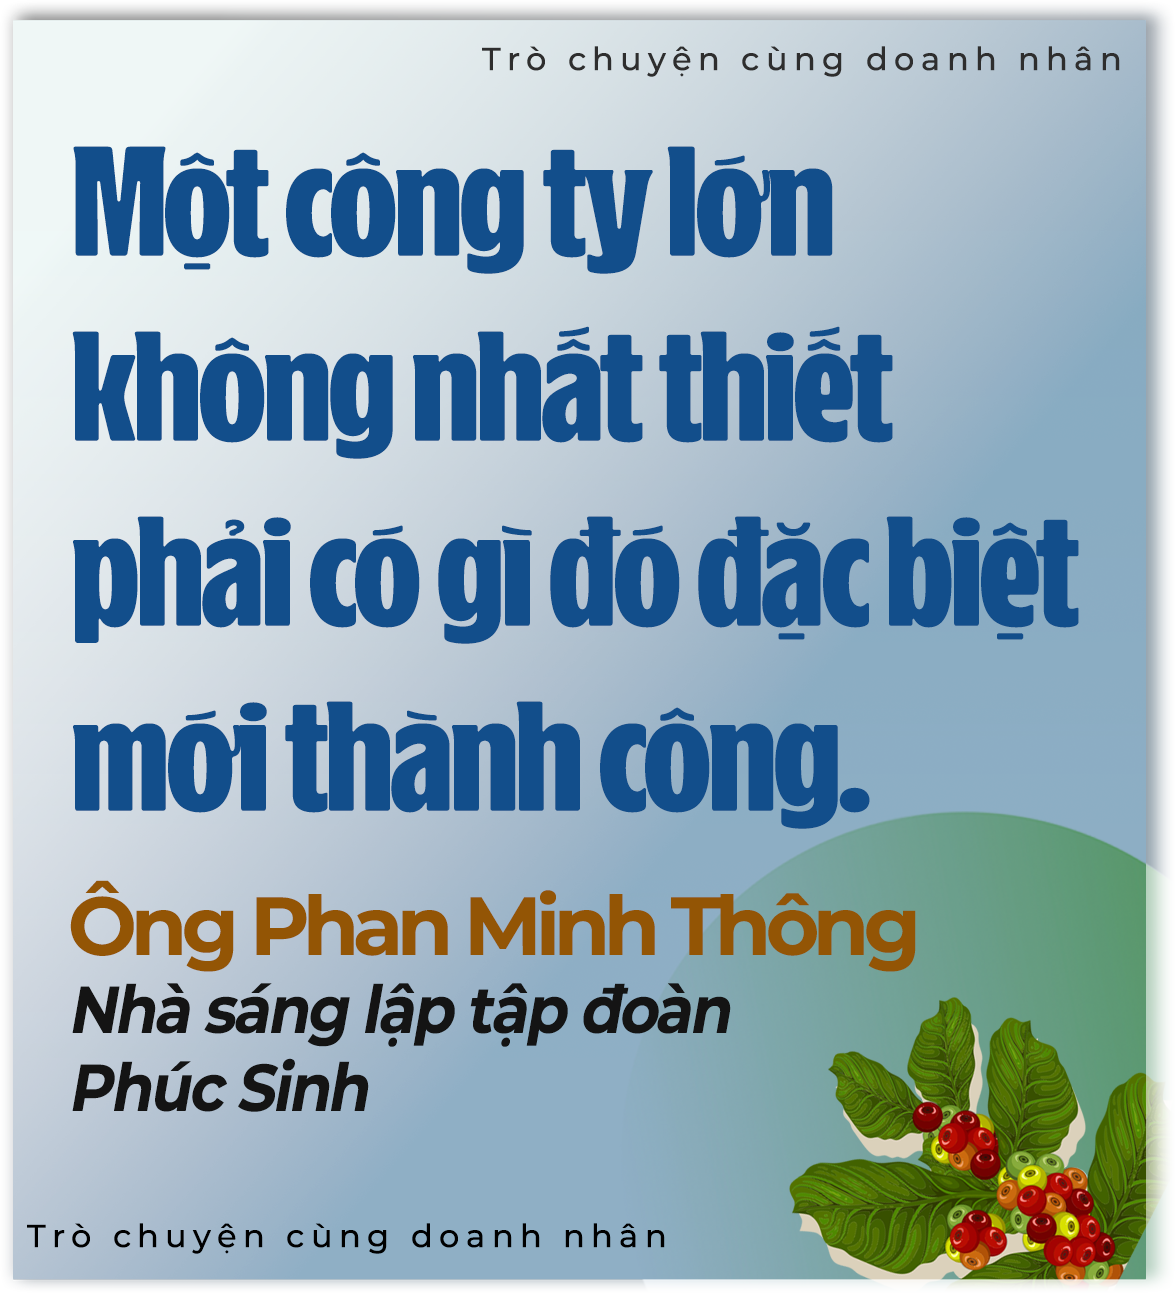 'Vua tiêu' Phan Minh Thông: Tôi nhìn thấy vàng ròng từ nông nghiệp - Ảnh 9.